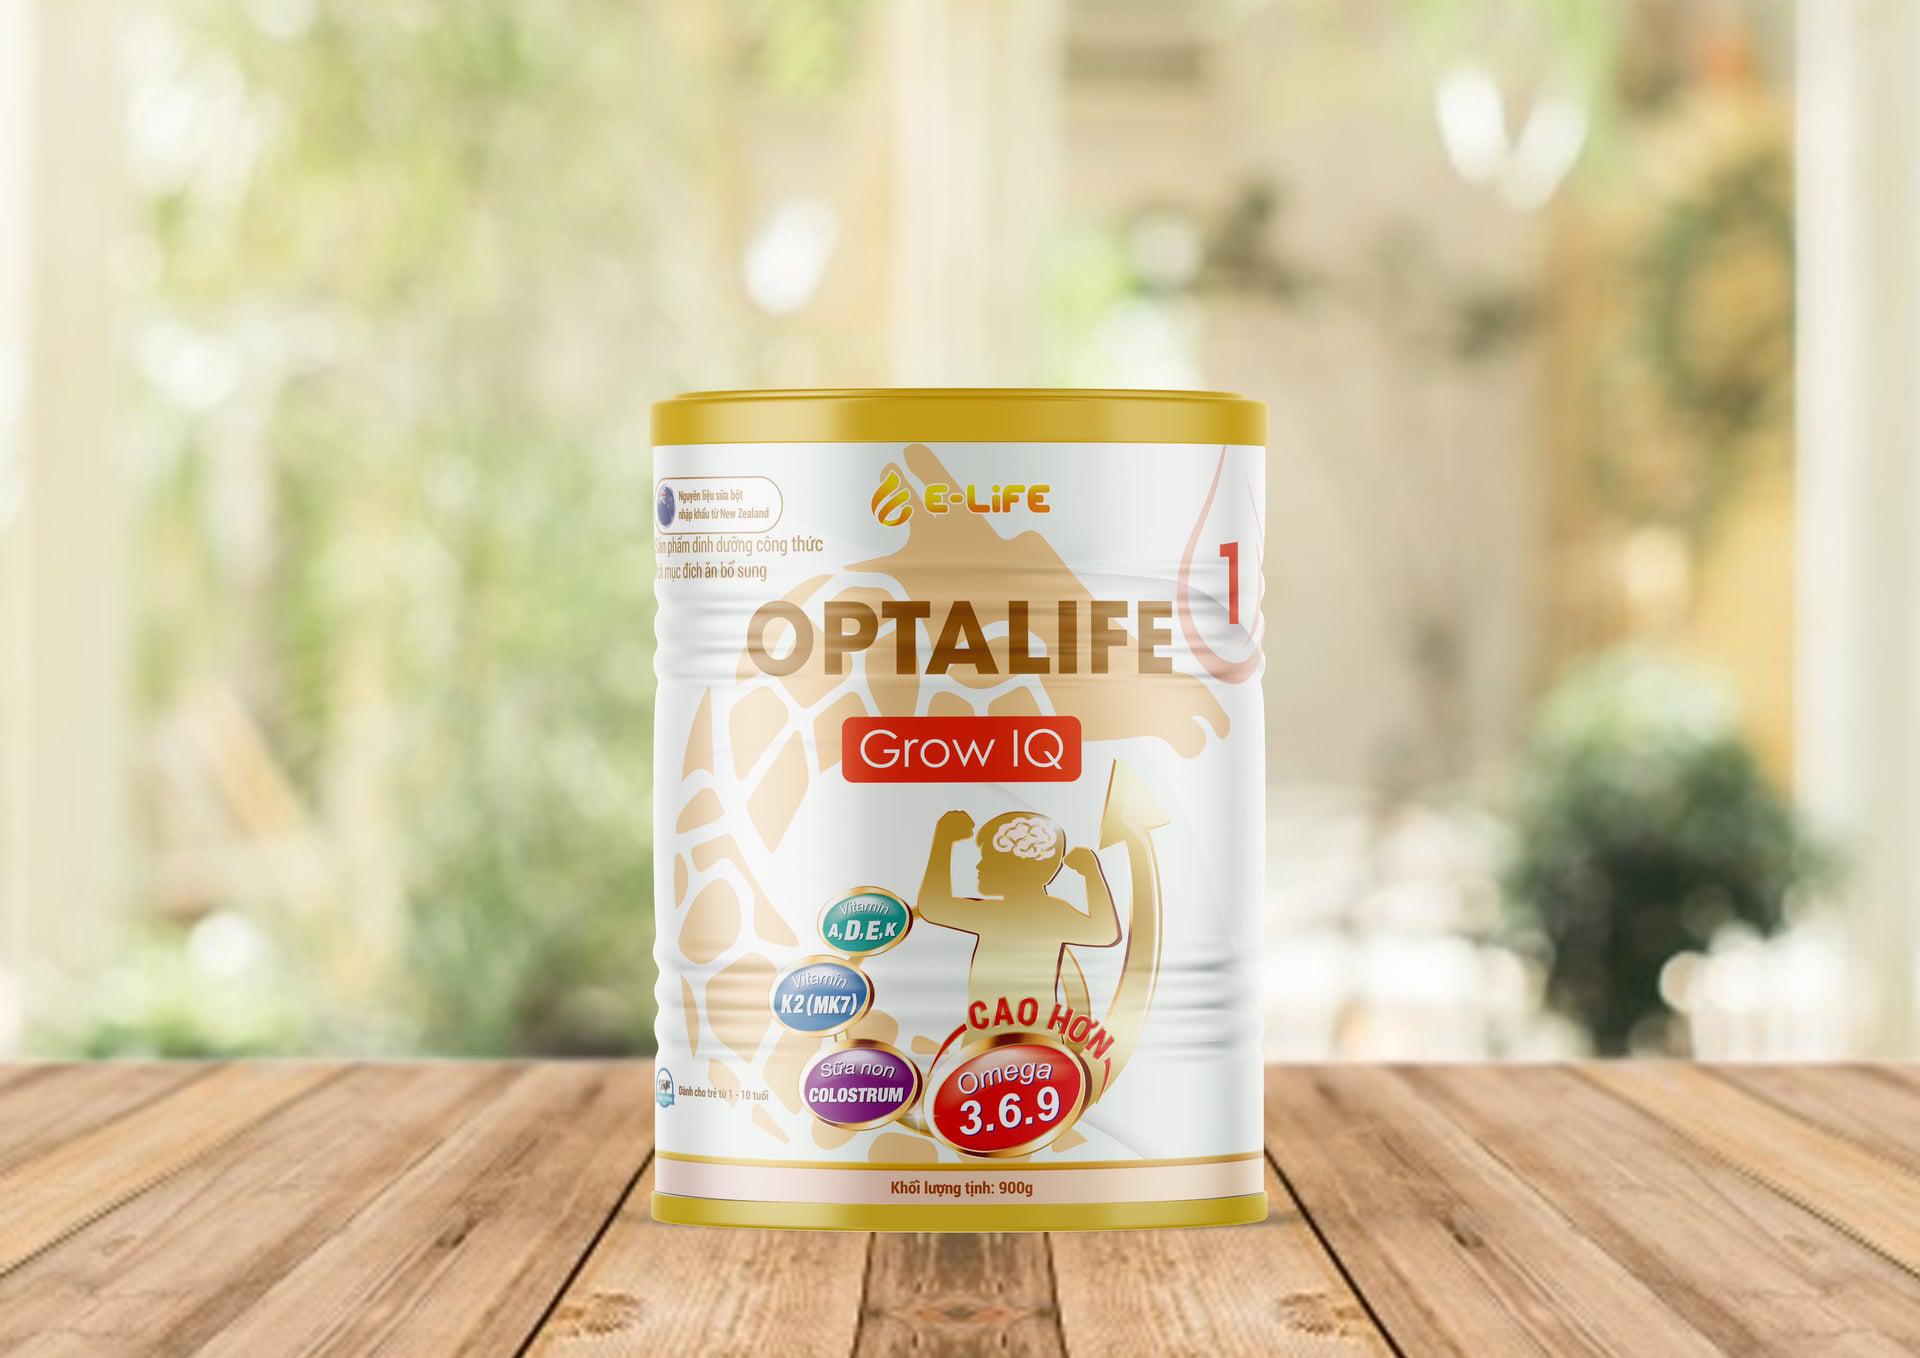 Sữa Non Optalife 1 - Sữa bột tốt nhất dành cho trẻ 1 đến 10 tuổi - Elife công ty cung cấp sỉ sữa bột 3 miền Bắc, Trung, Nam